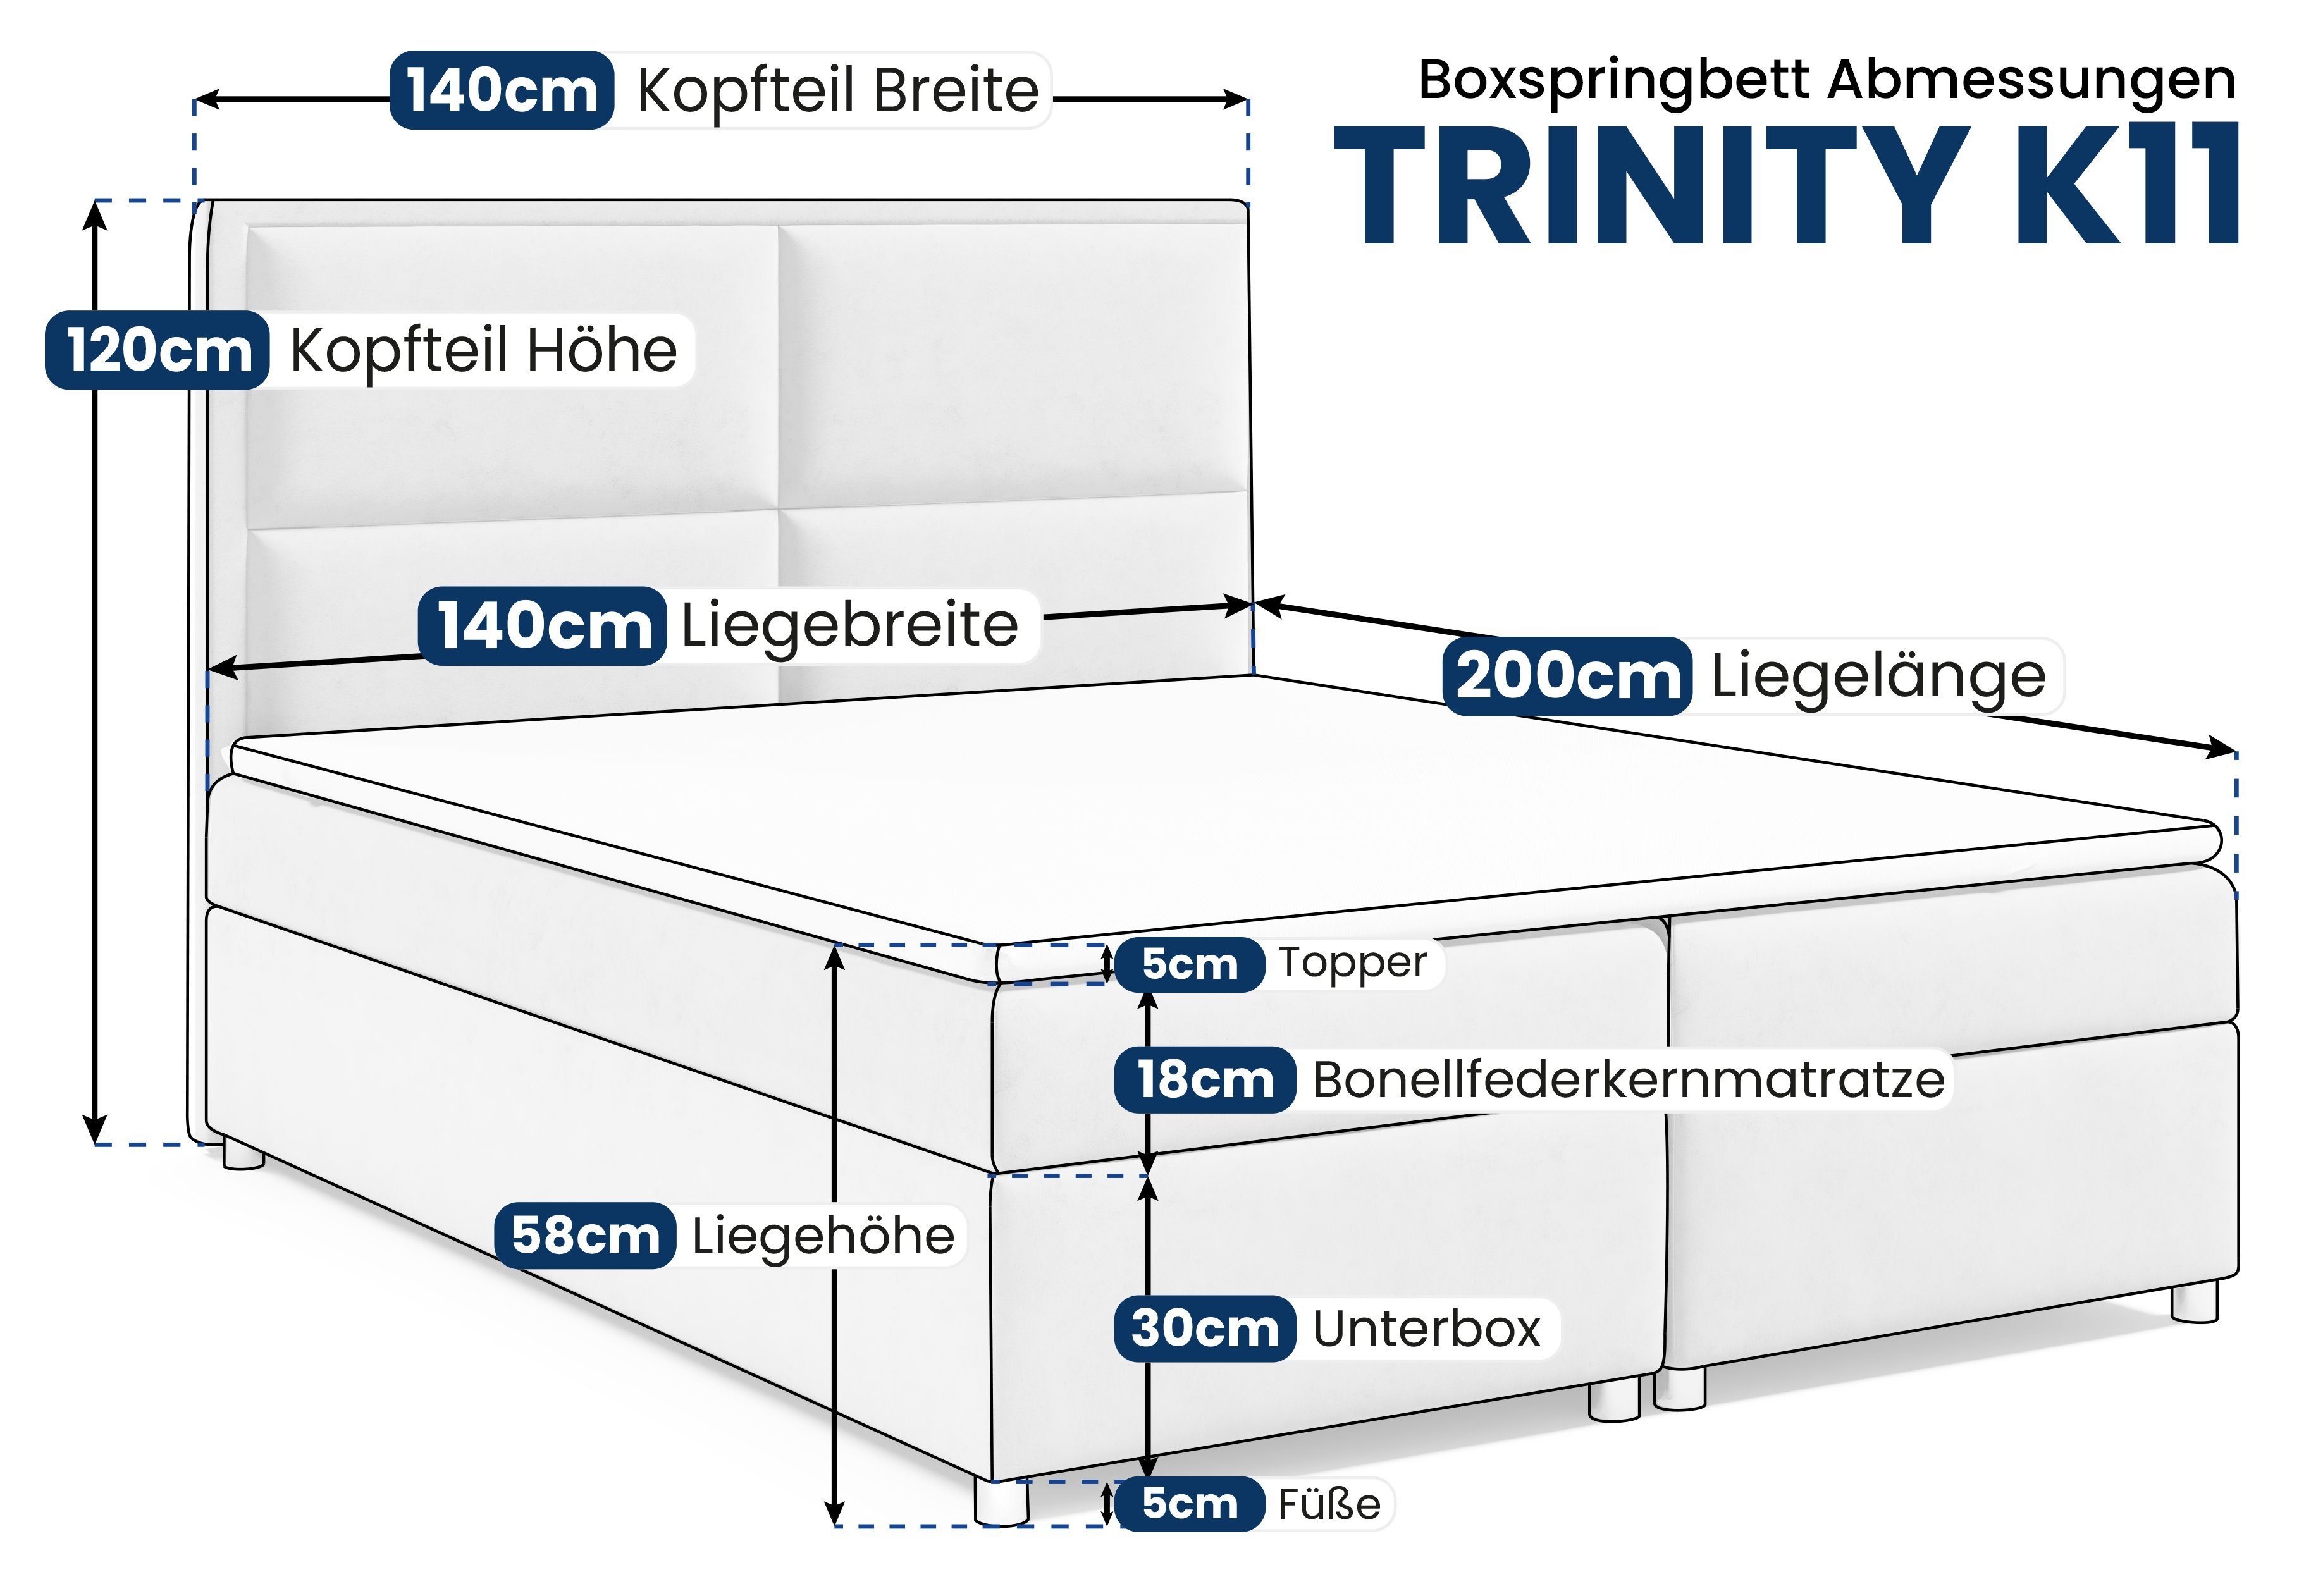 Trinity Blau Topper for Home K11, Boxspringbett Best Bettkasten mit und